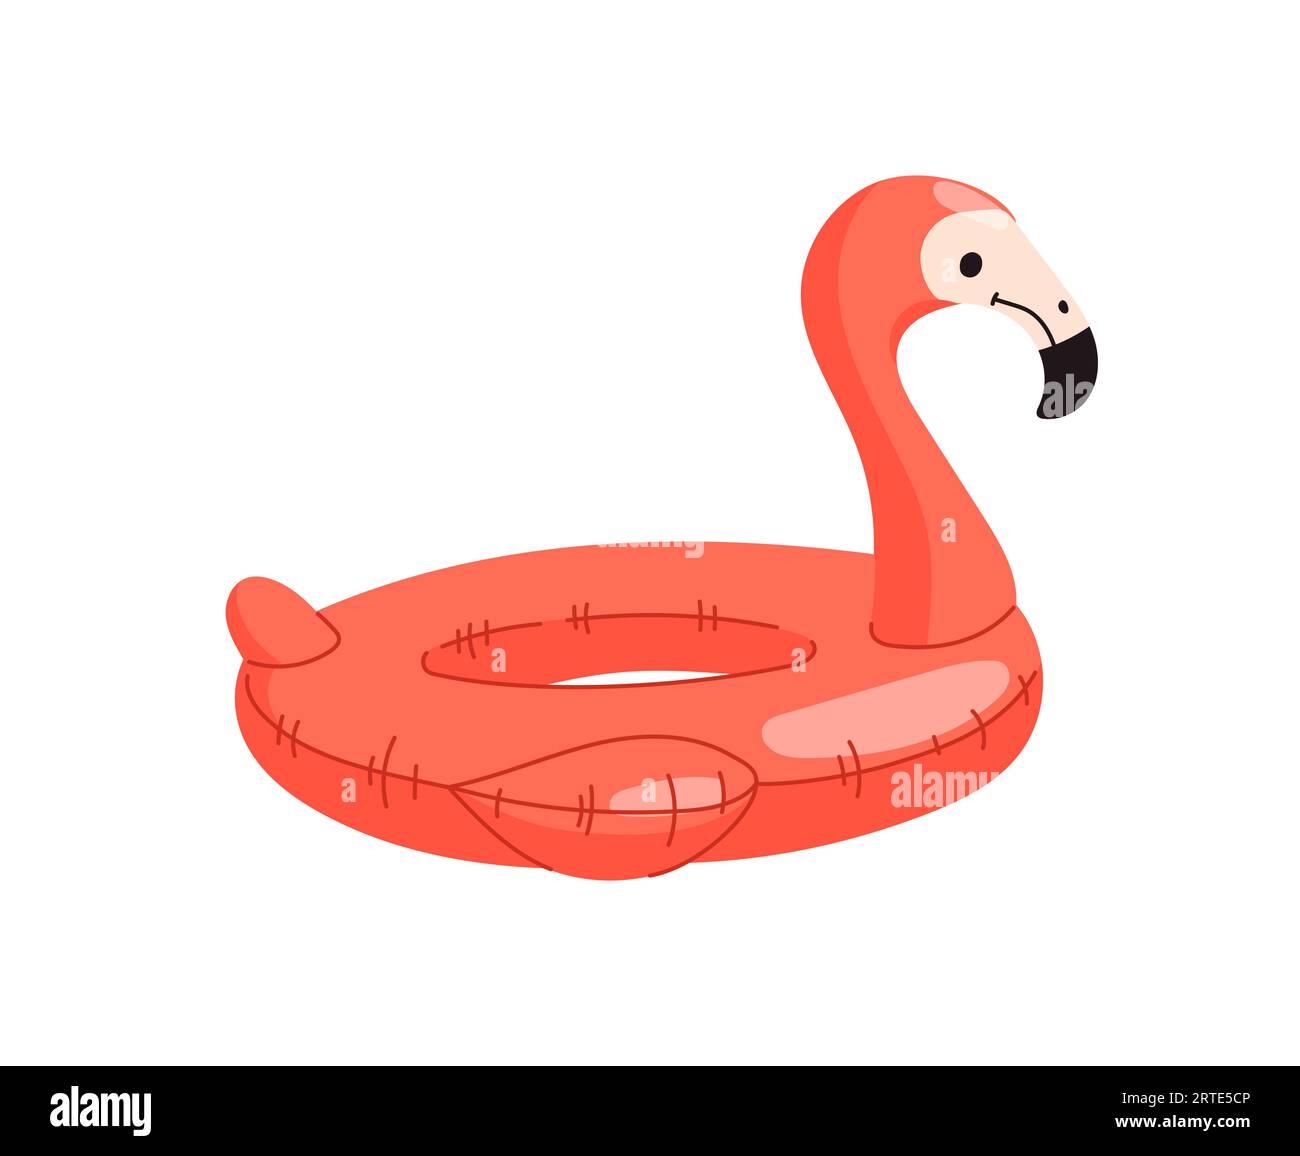 Aufblasbarer Schwimmring mit Flamingo-Schwimmern. Flacher tropischer Vogelballon oder Schwimmringspielzeug für Poolparty. Urlaubsreisen und Strandurlaub, Resort-Spaß und Sommerferien isoliertes Vektorsymbol Stock Vektor